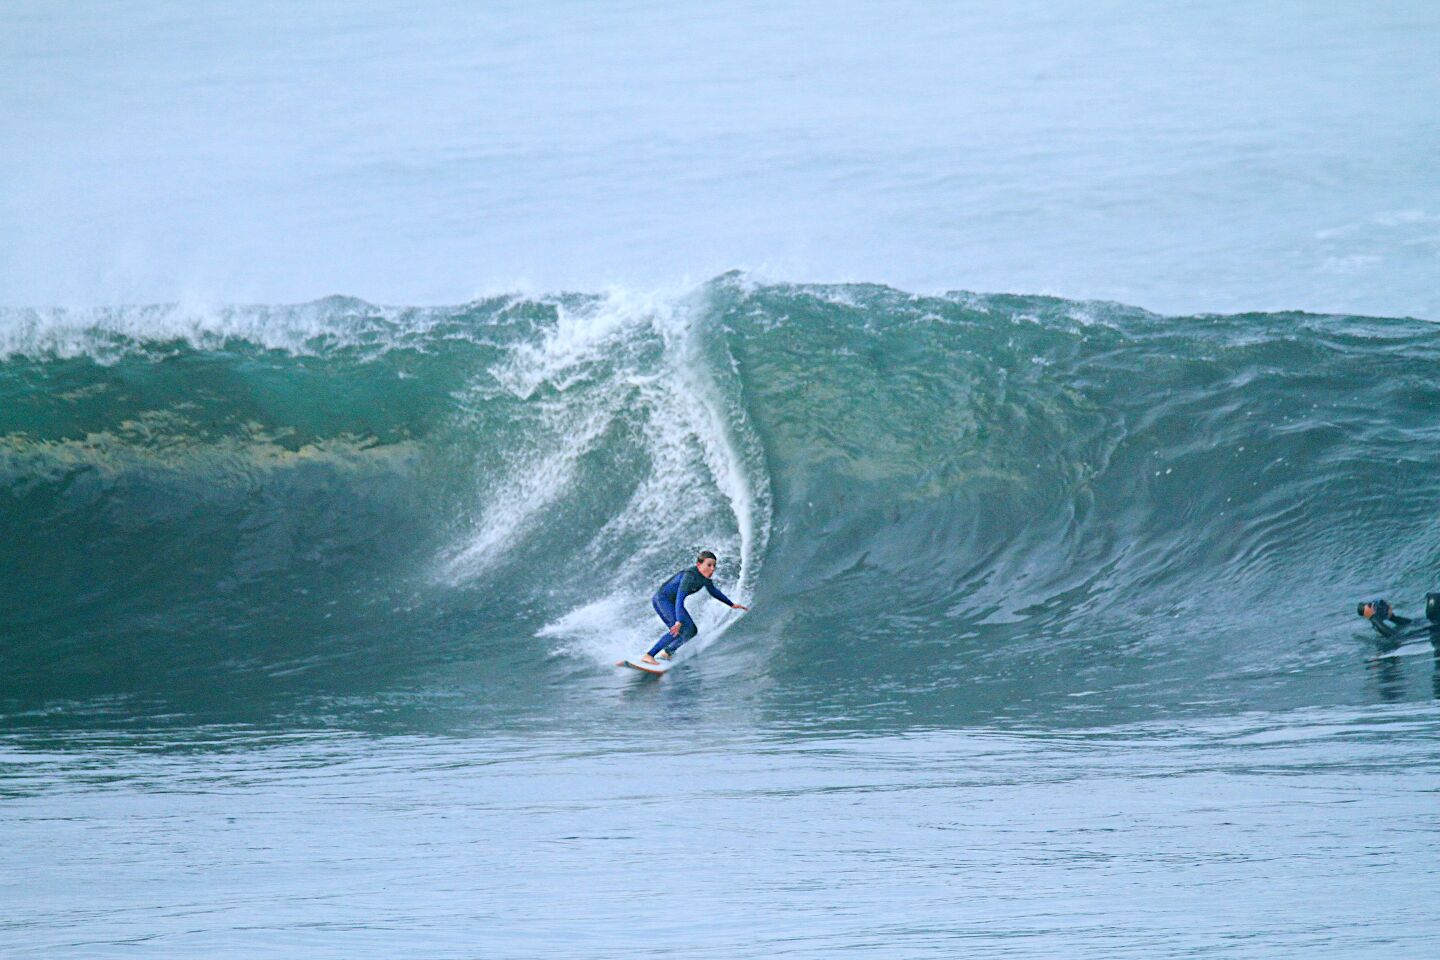 La Jolla resident Cortez Jernigan, 10, surfs a swell at Big Rock.